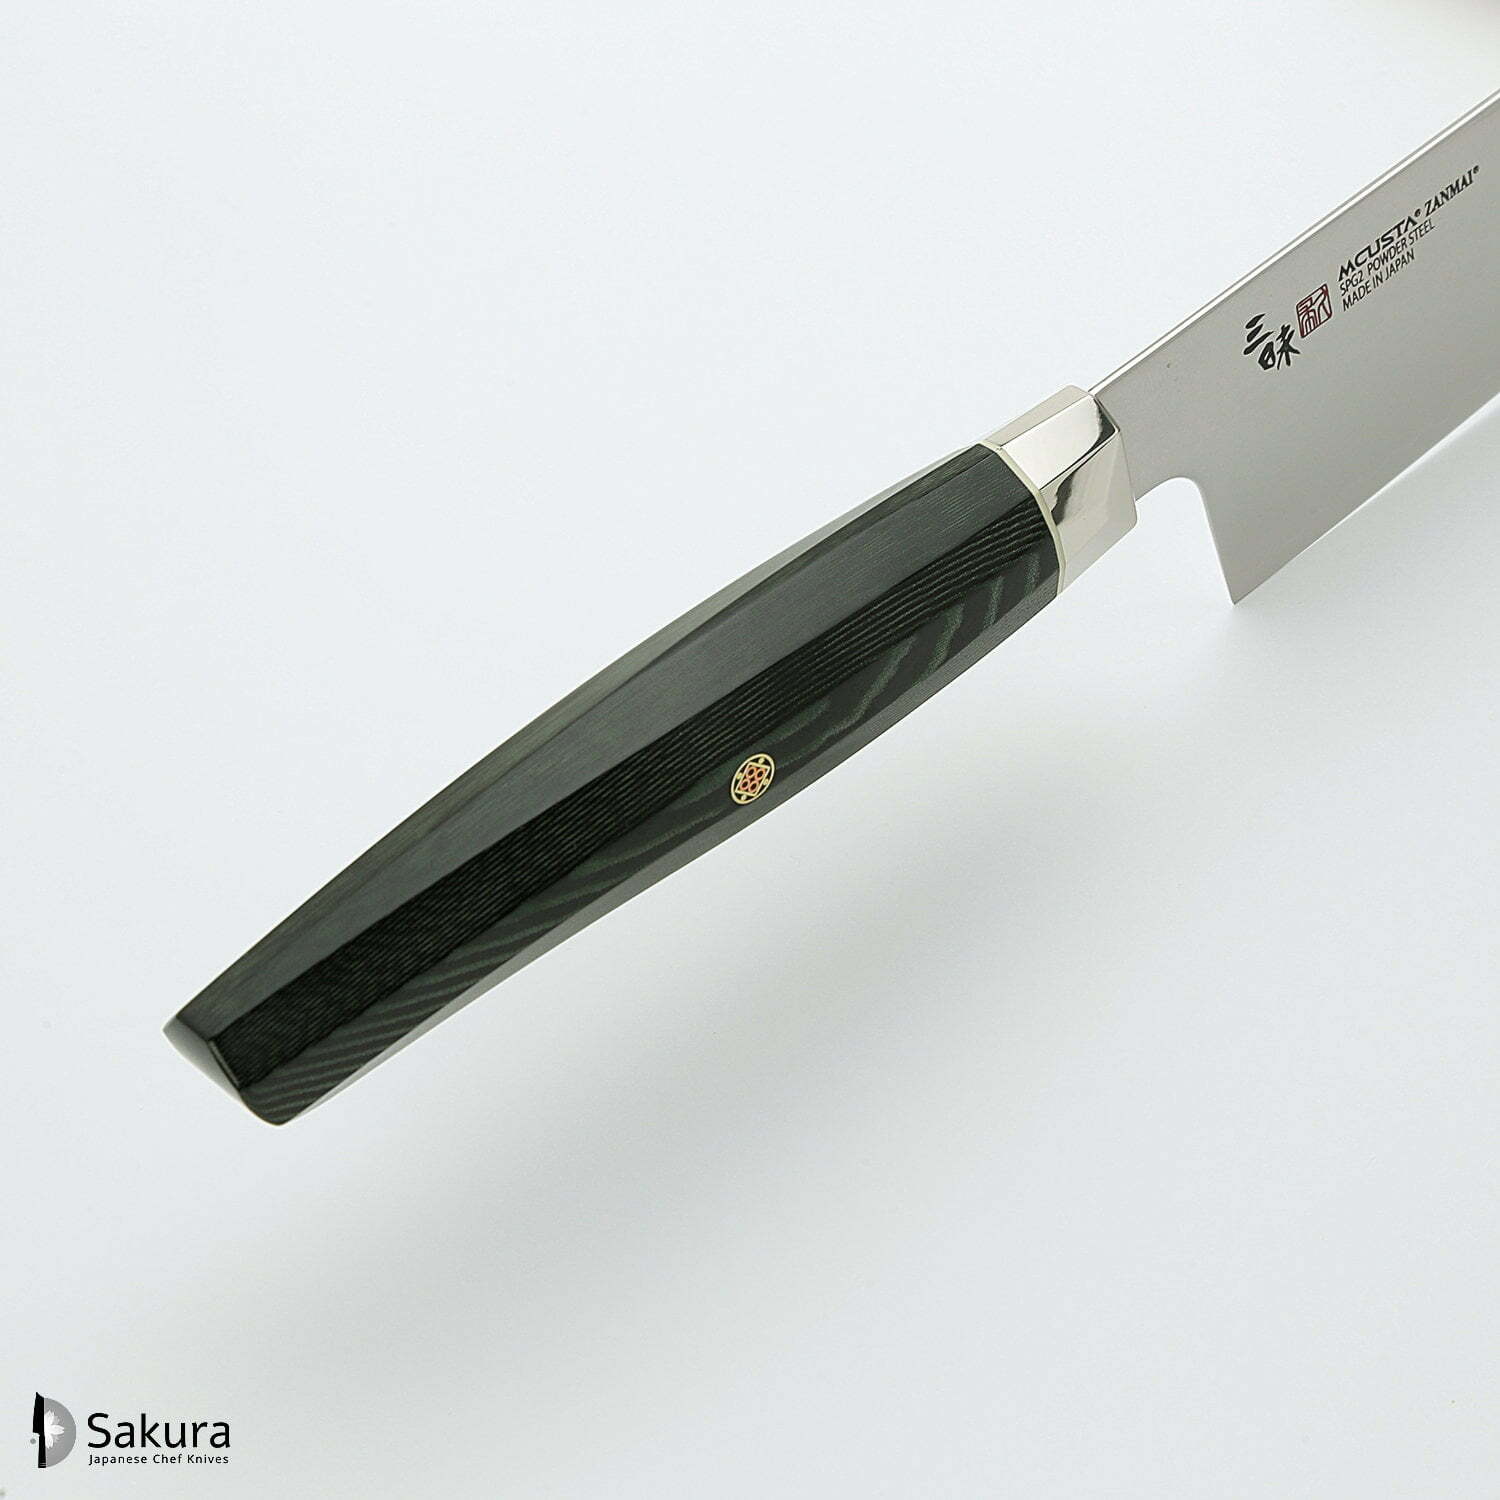 סכין רב-תכליתית סָנטוֹקוּ 180מ״מ מחושלת בעבודת יד 3 שכבות: פלדת פחמן יפנית מתקדמת מסוג R2/SG2 עטופה פלדת אל-חלד גימור מט מלוטש מקוסטה זאנמאיי יפן ZRG-1203G